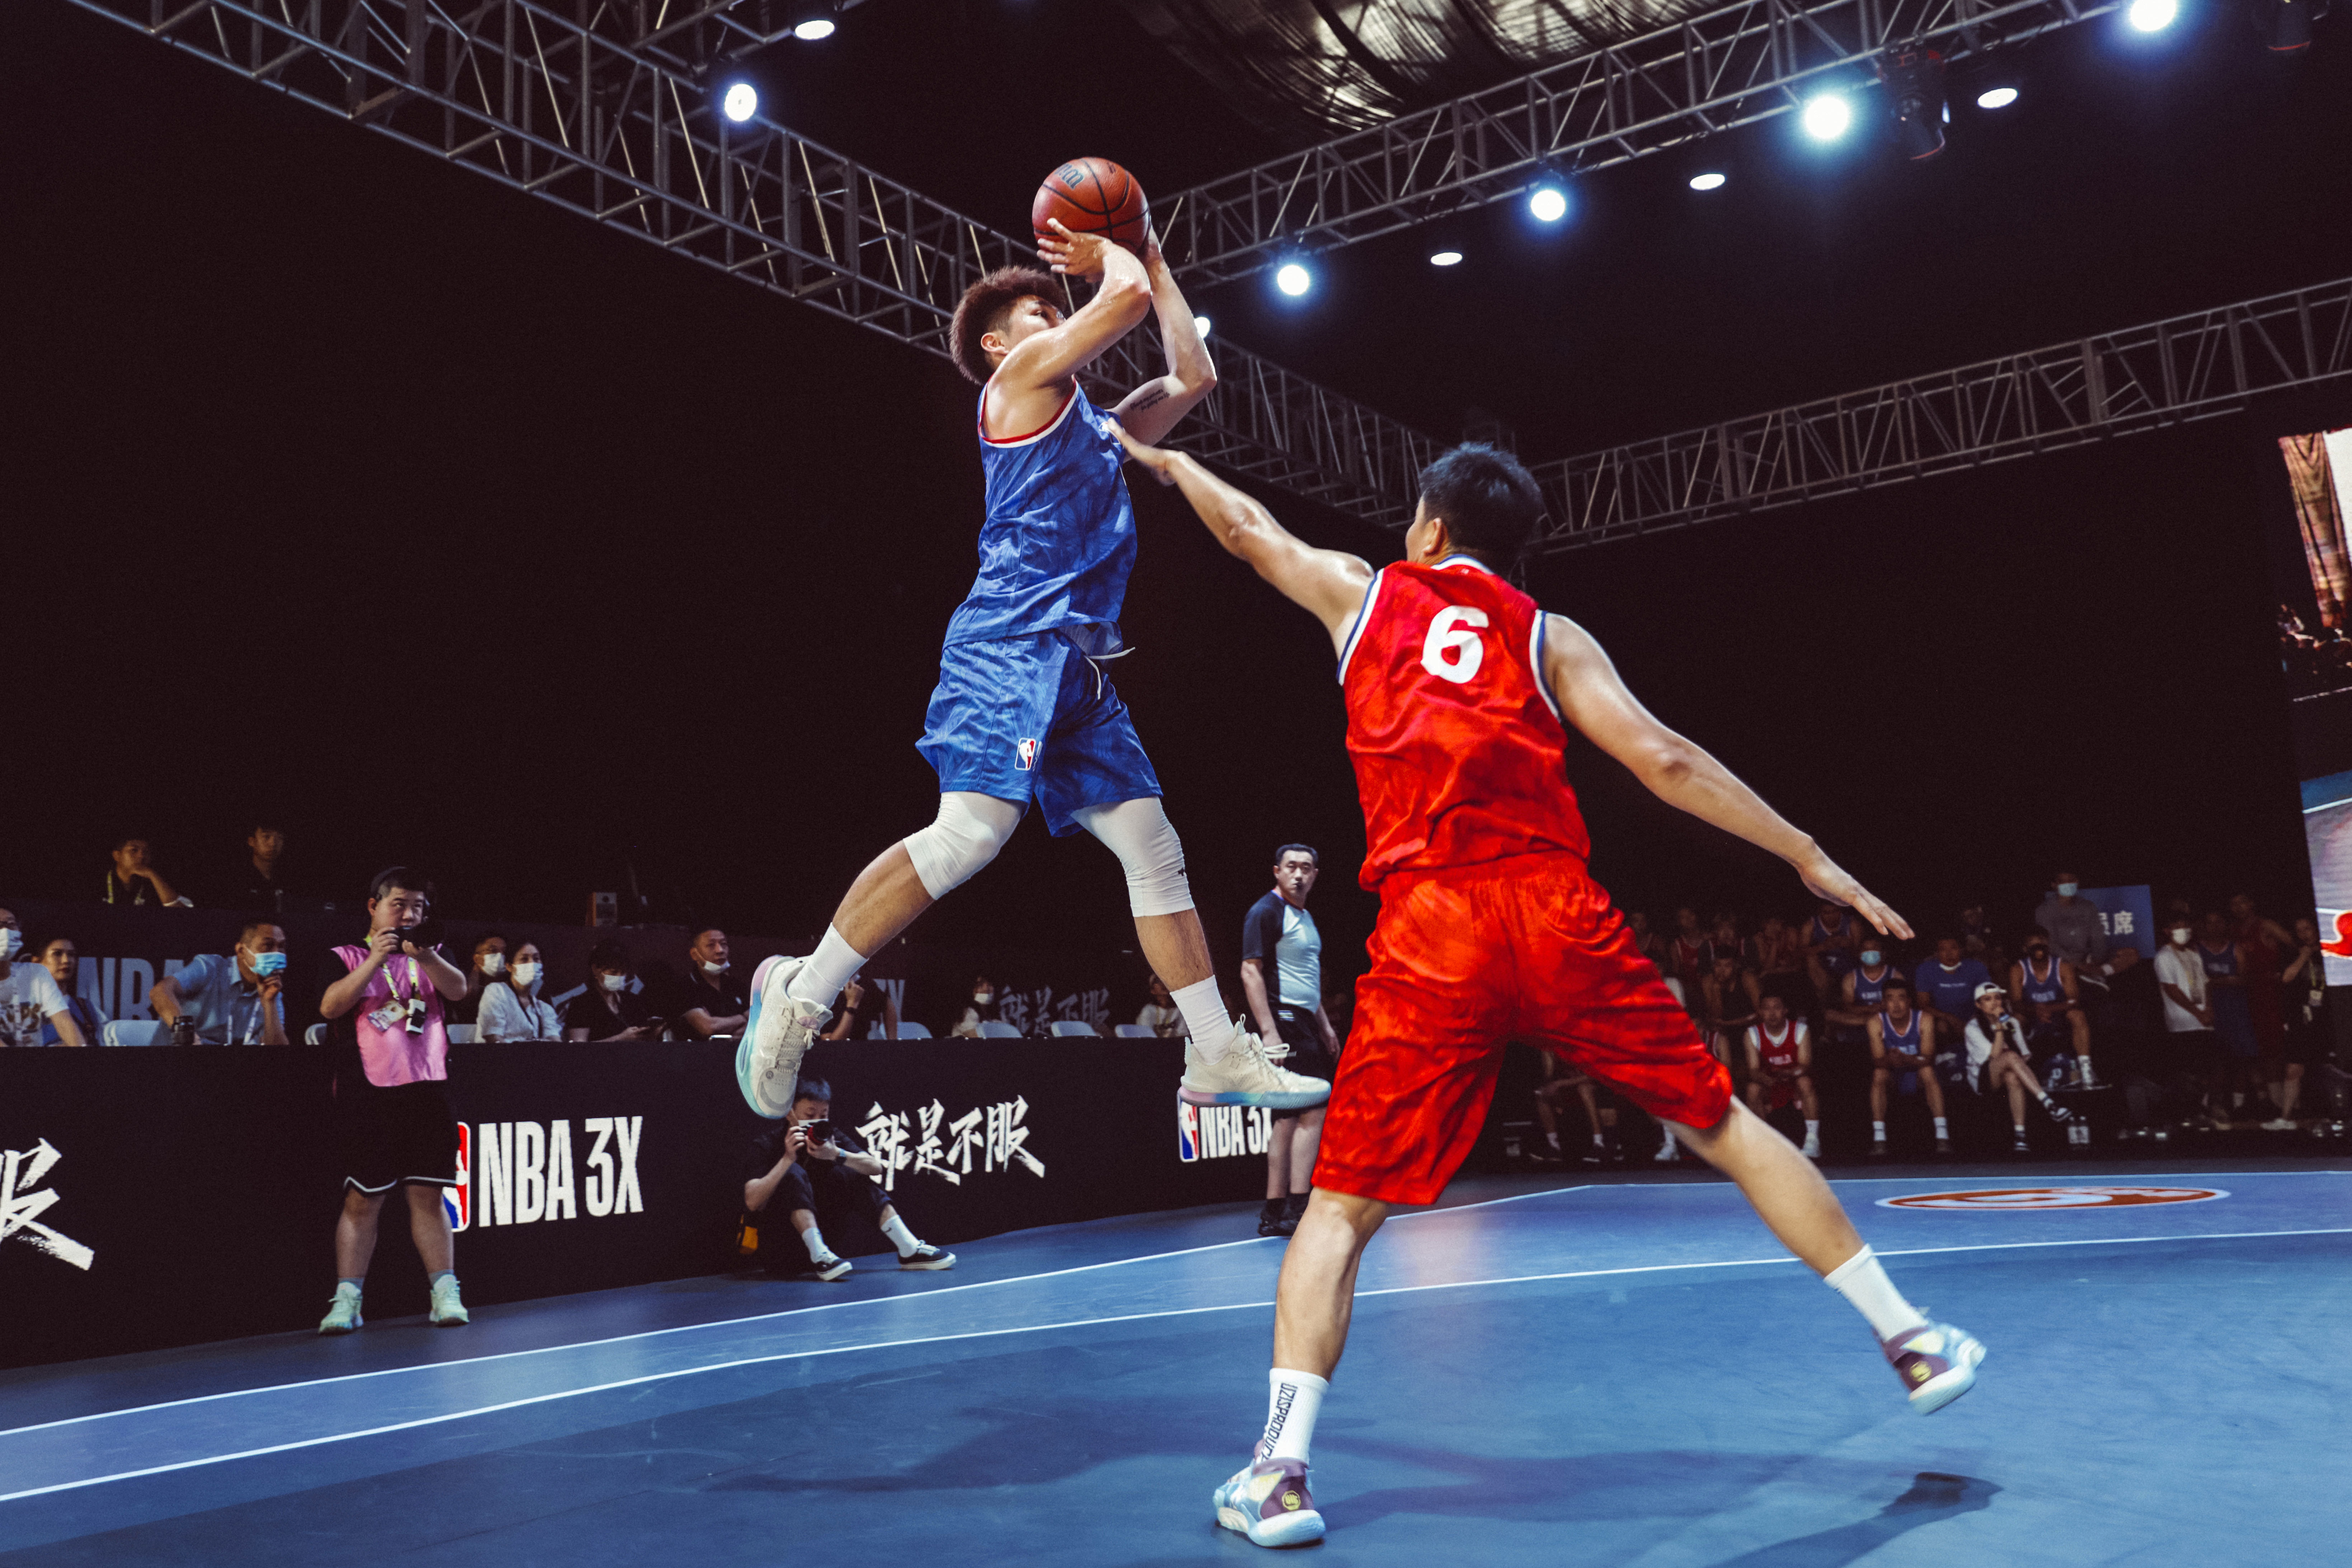 （图说：NBA3X不断扩大规模、完善赛制。NBA中国希望把比赛变成贯穿数月且全国全民参与的篮球狂欢，让更多朋友感受篮球的魅力。）